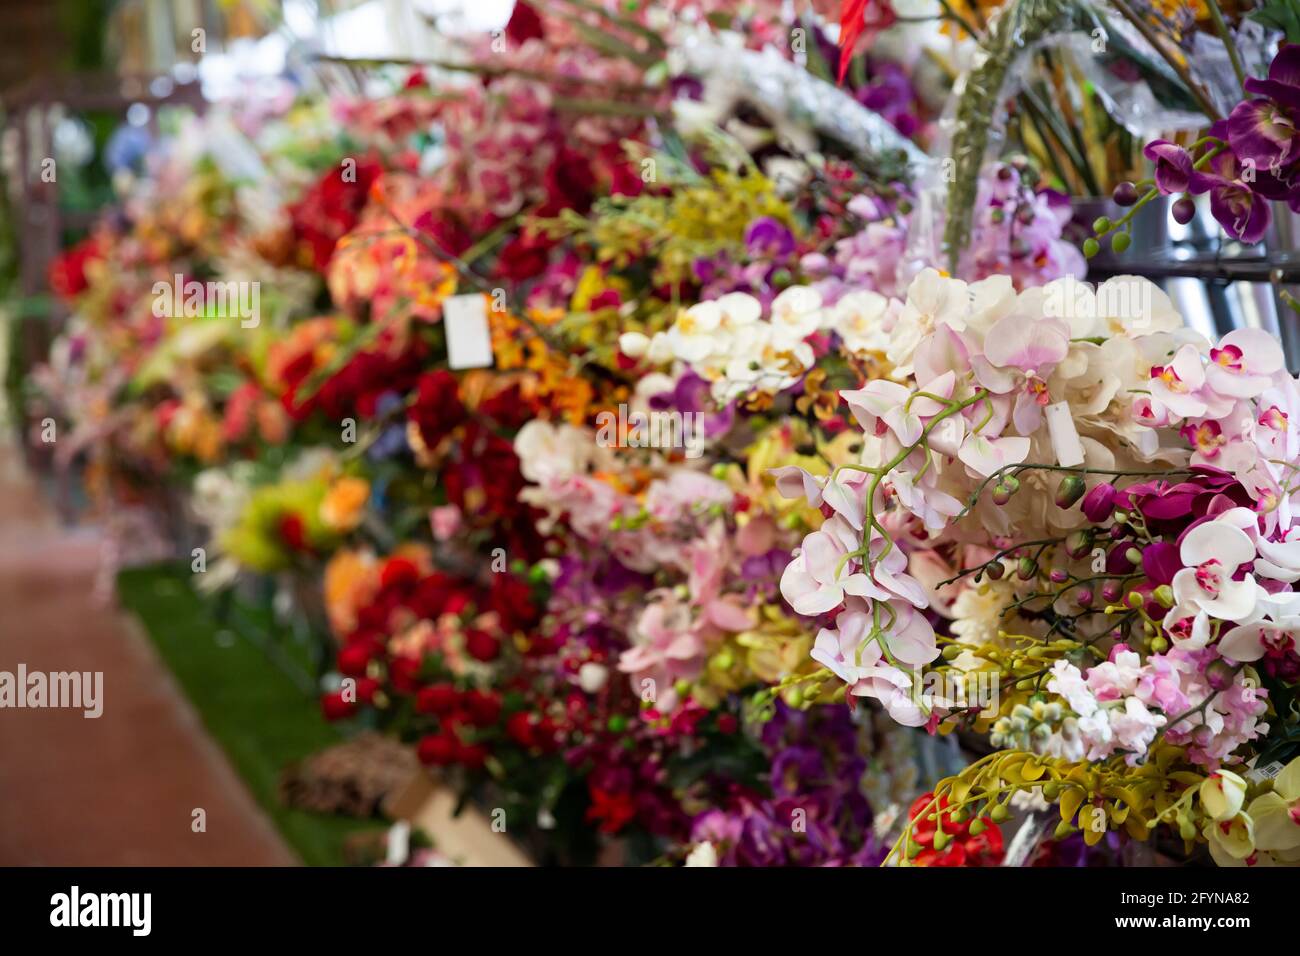 Vetrina colorata di fioreria con ampio assortimento di fiori artificiali Foto Stock